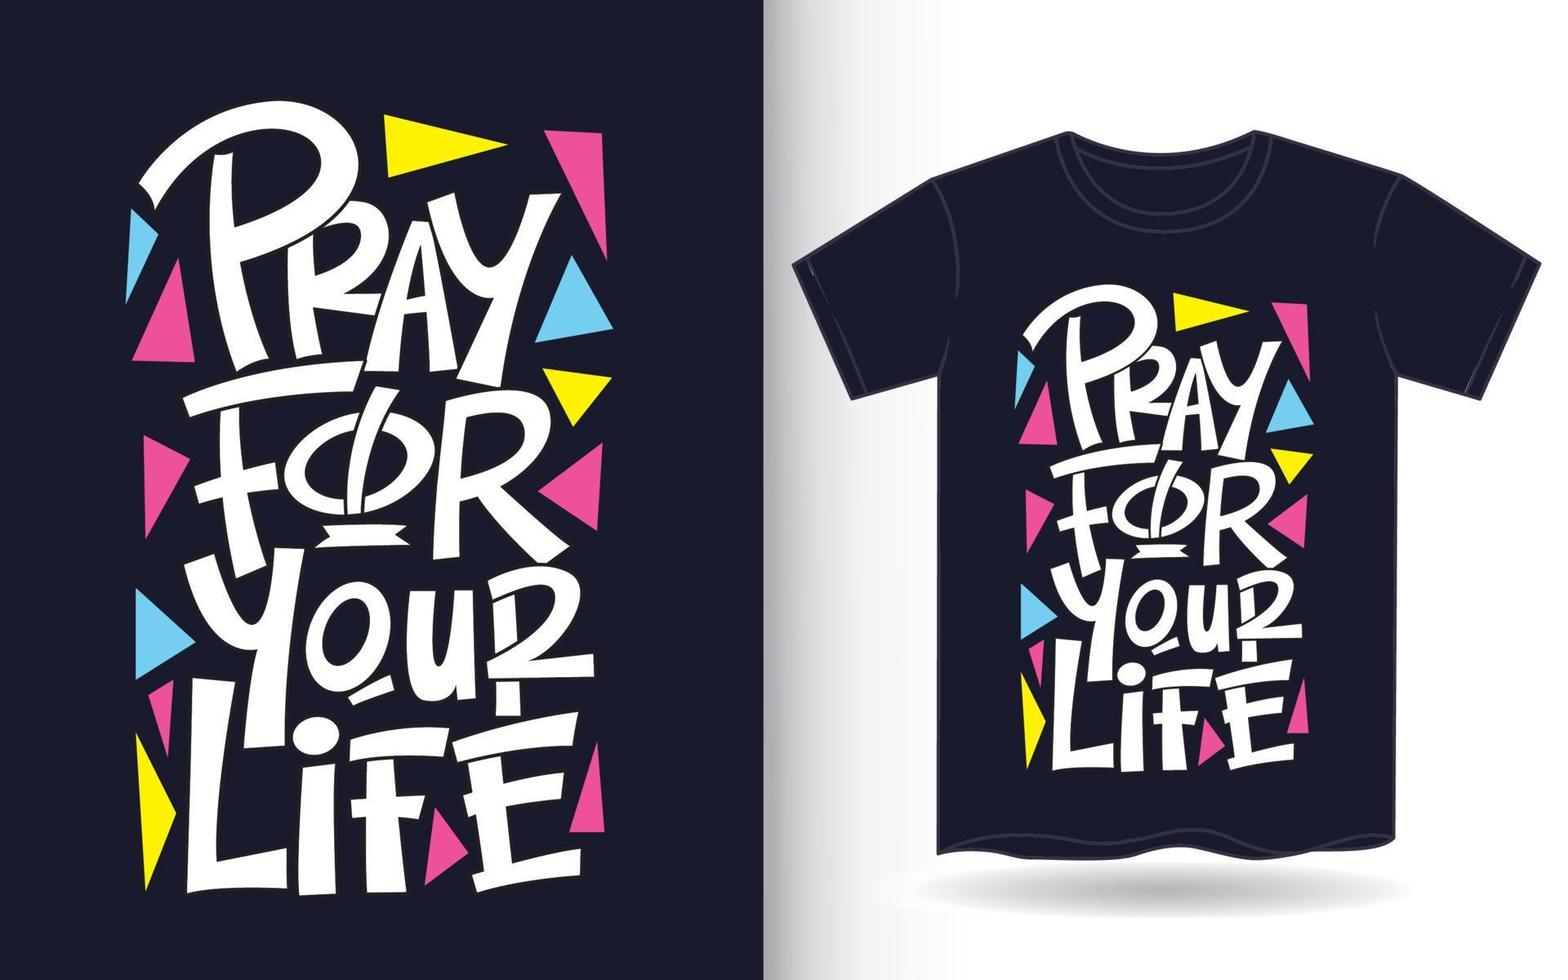 bid voor je leven handschrift voor t-shirt vector